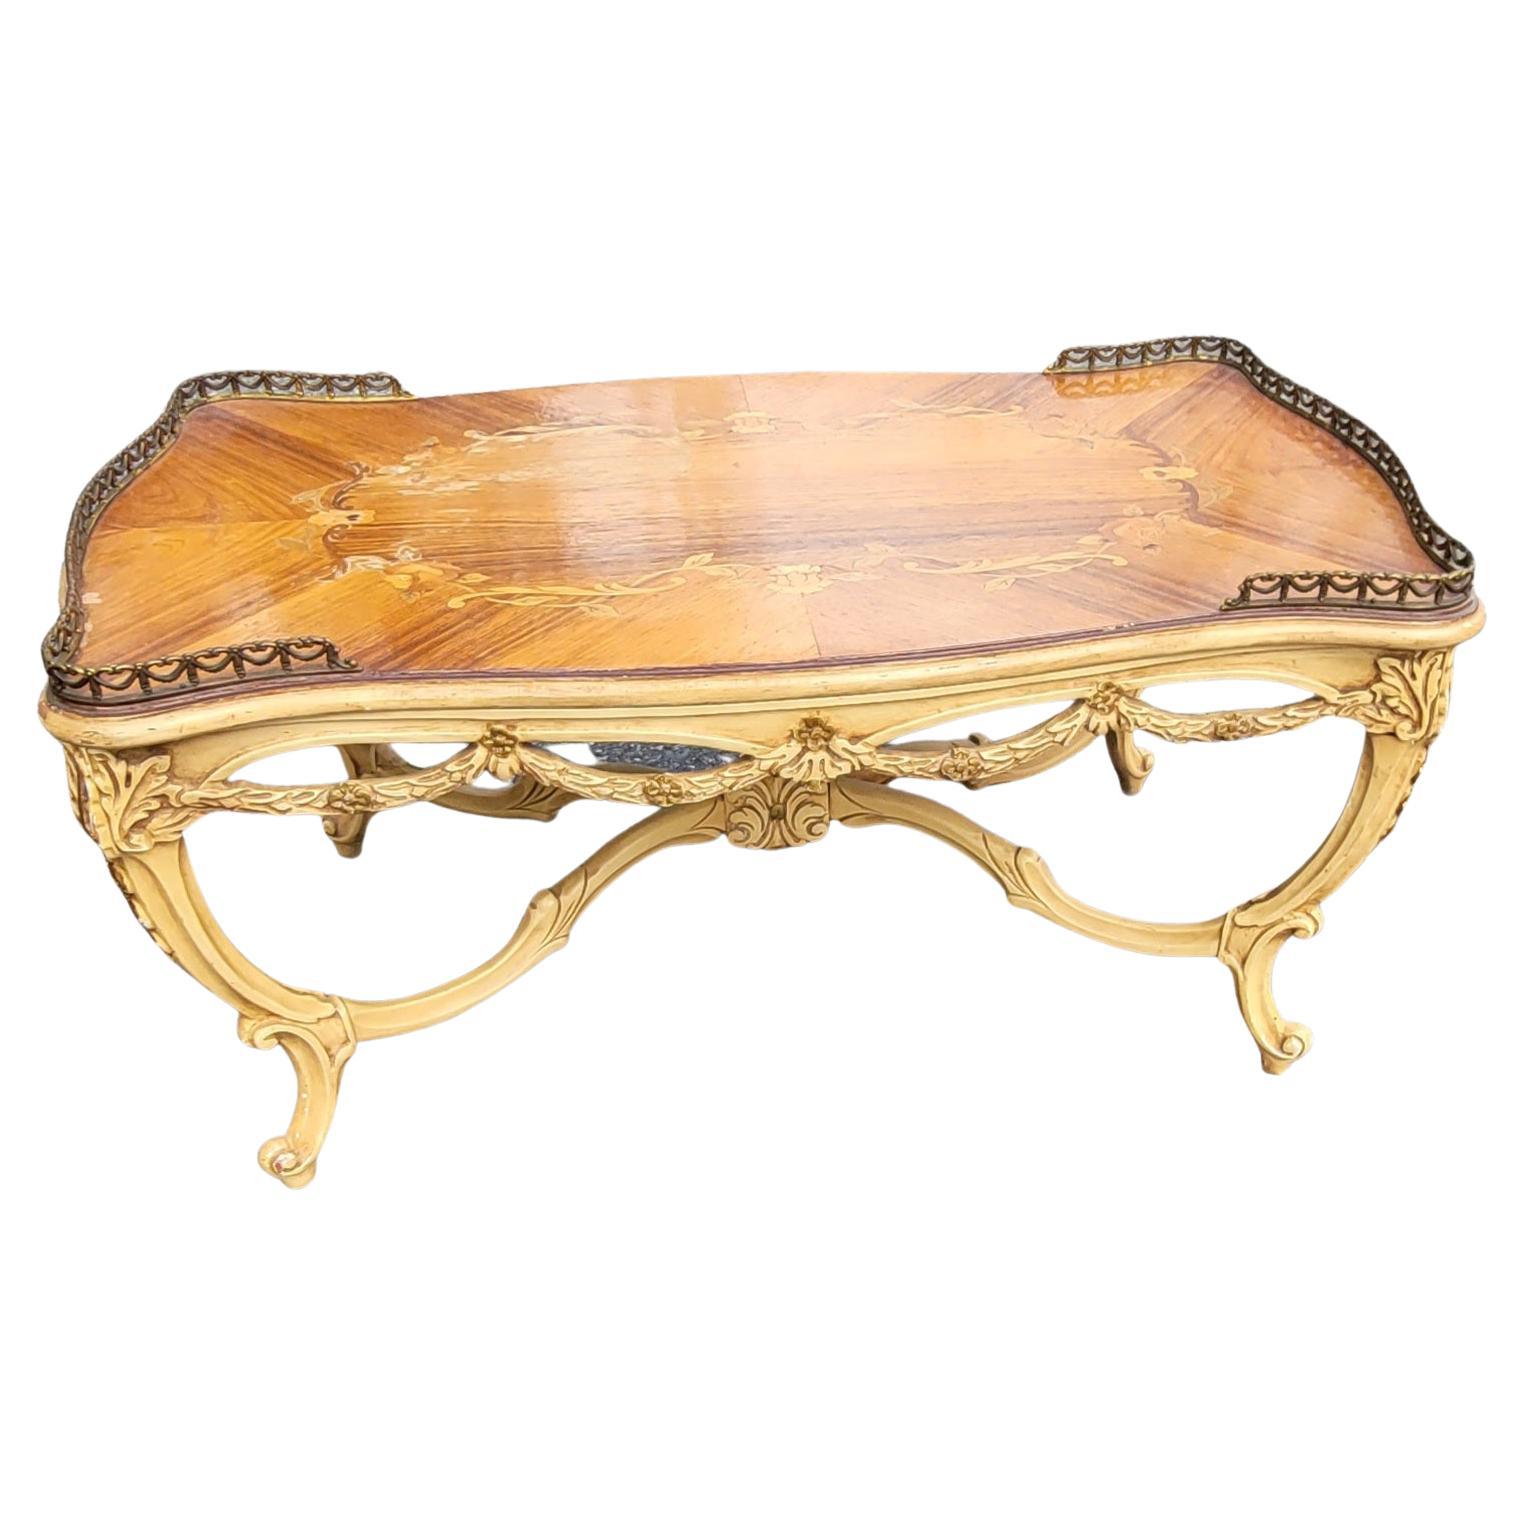 Magnifique table basse française ancienne de style Louis XV, datant des années 1910. Cette table est faite de bois de noyer et de bois de roi, avec un dessus en marqueterie florale de bois de satin avec une galère sculptée, un cadre en bois sculpté